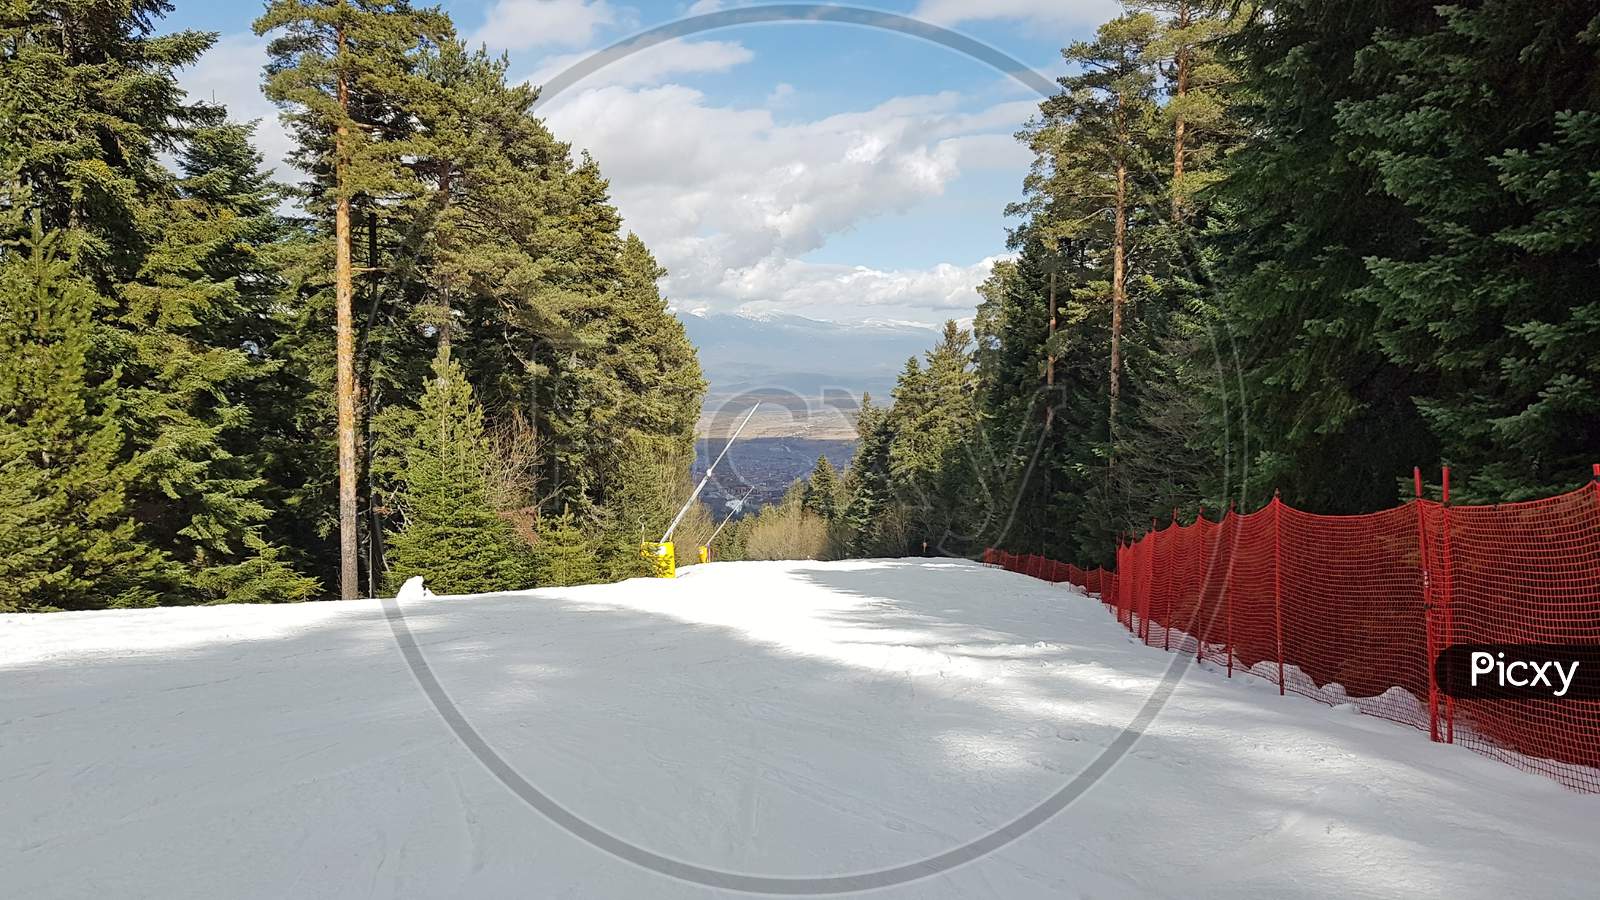 Ski Slope In A Winter Resort